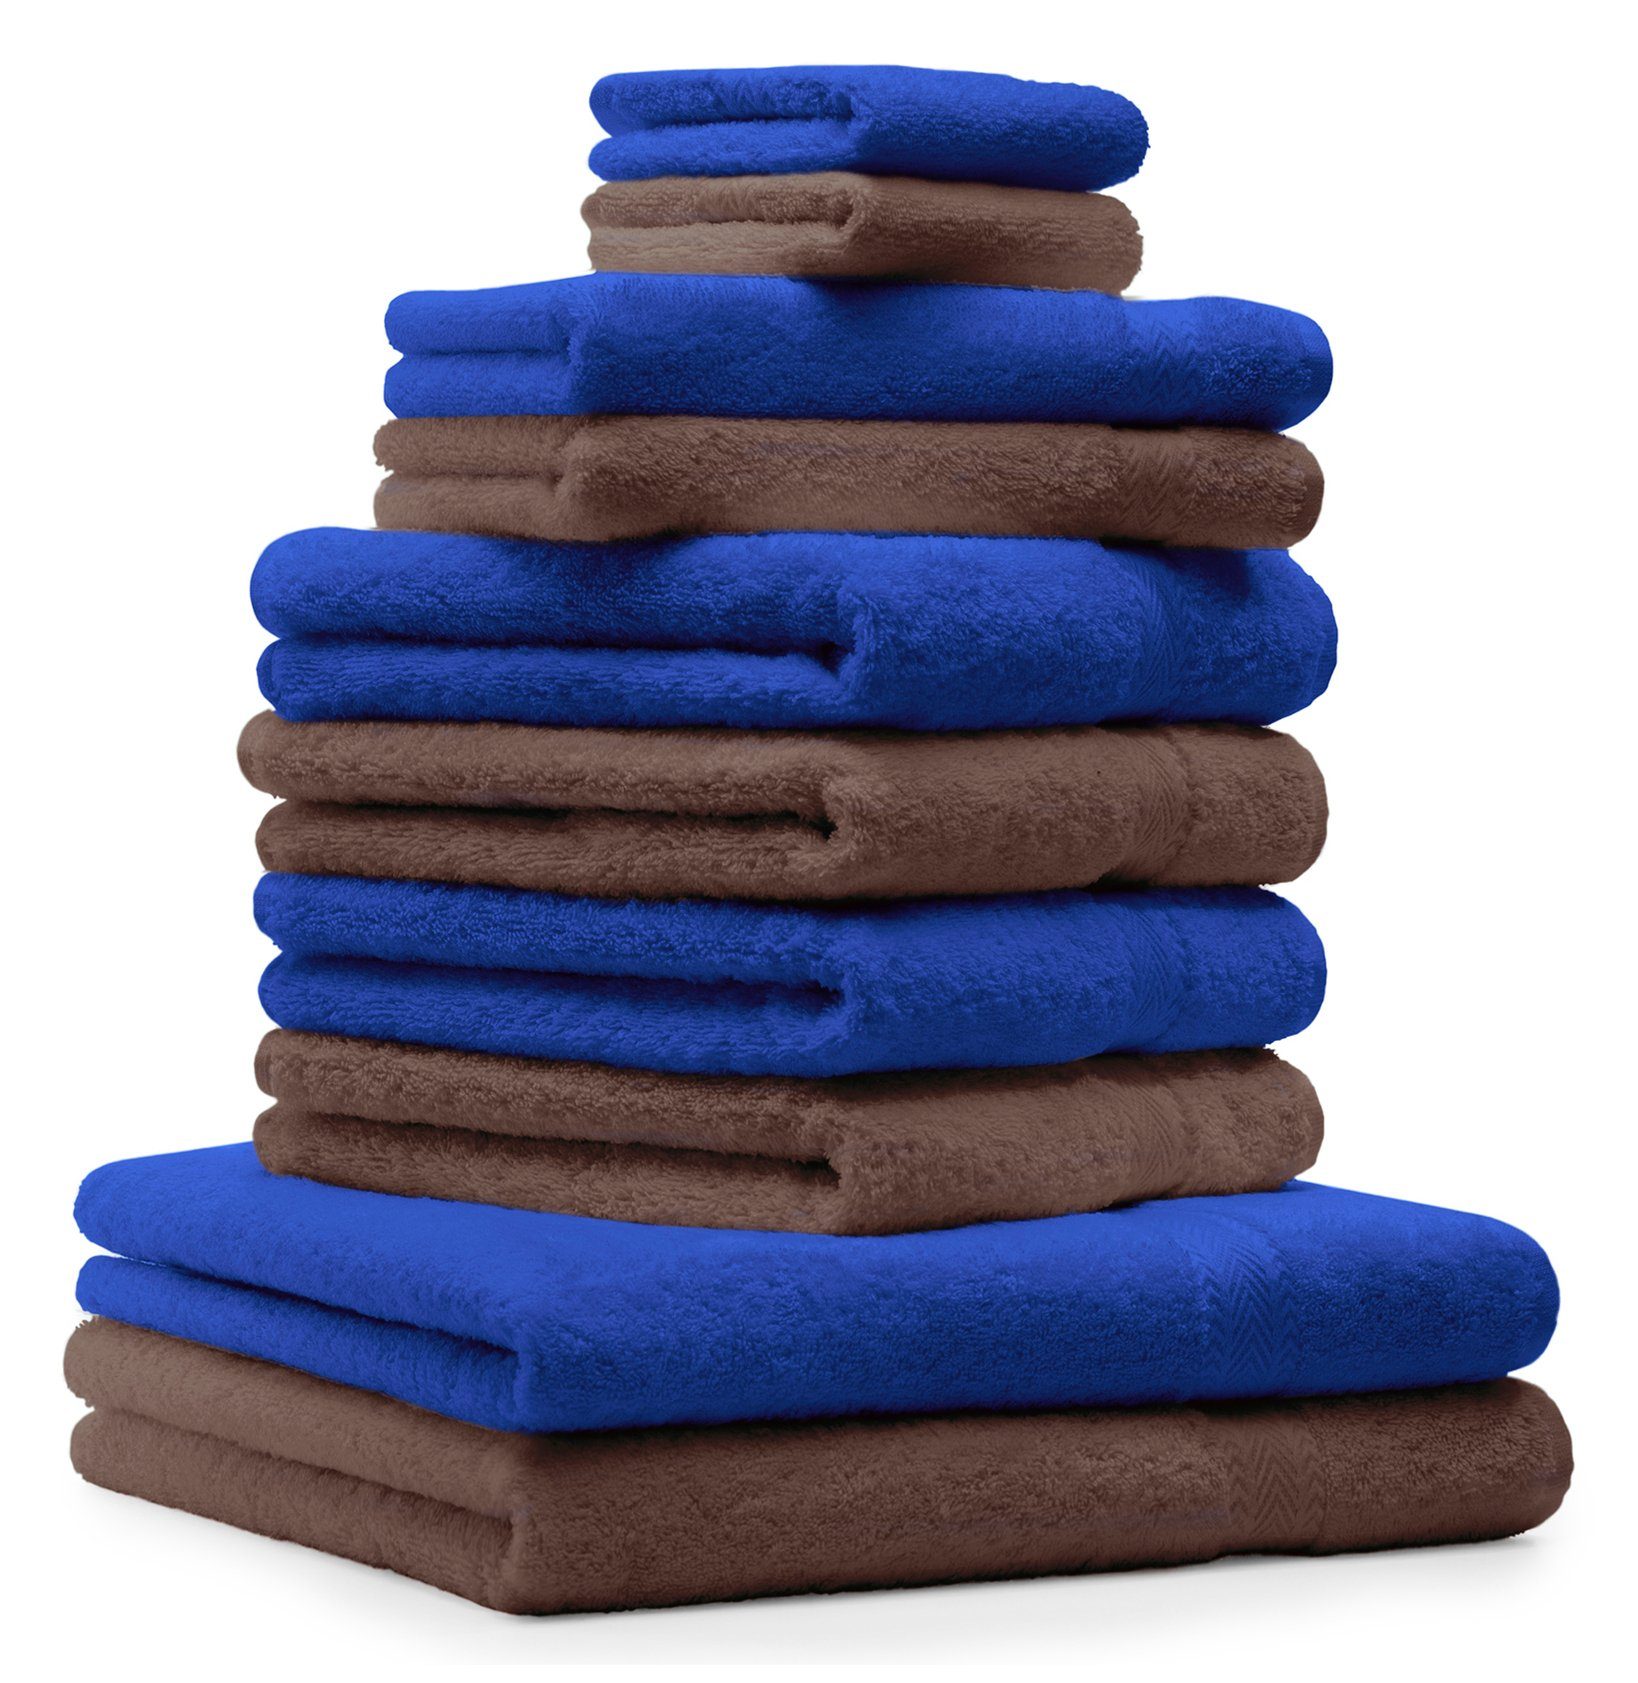 Betz Handtuch Set 10-TLG. Handtuch-Set Premium Farbe Royalblau & Nussbraun, 100% Baumwolle, (10-tlg) | Handtuch-Sets